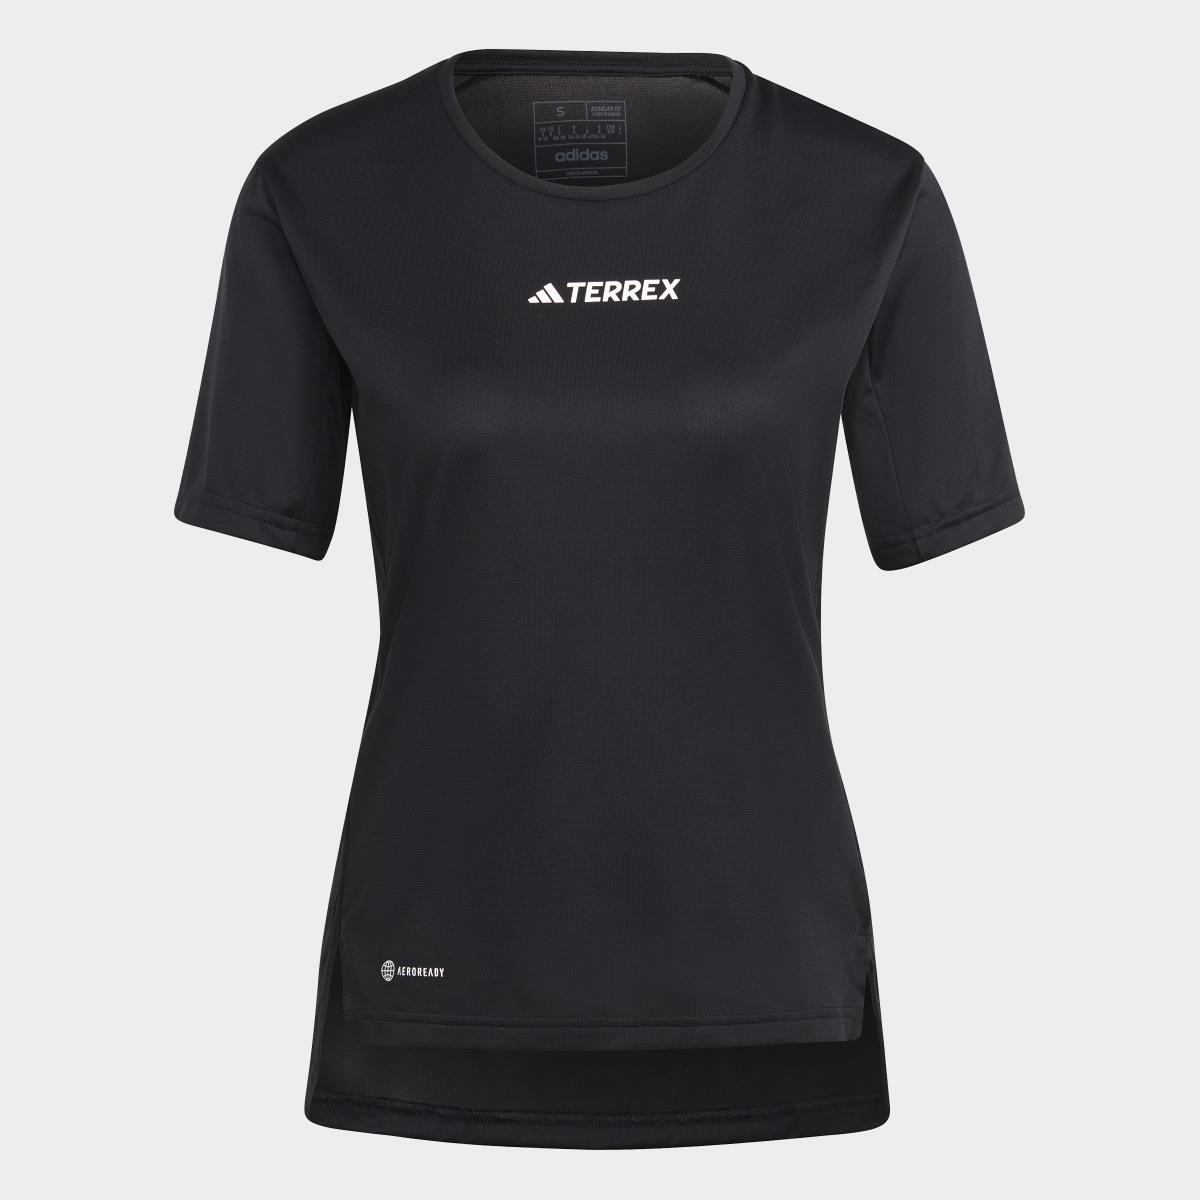 Adidas T-shirt Multi TERREX. 5